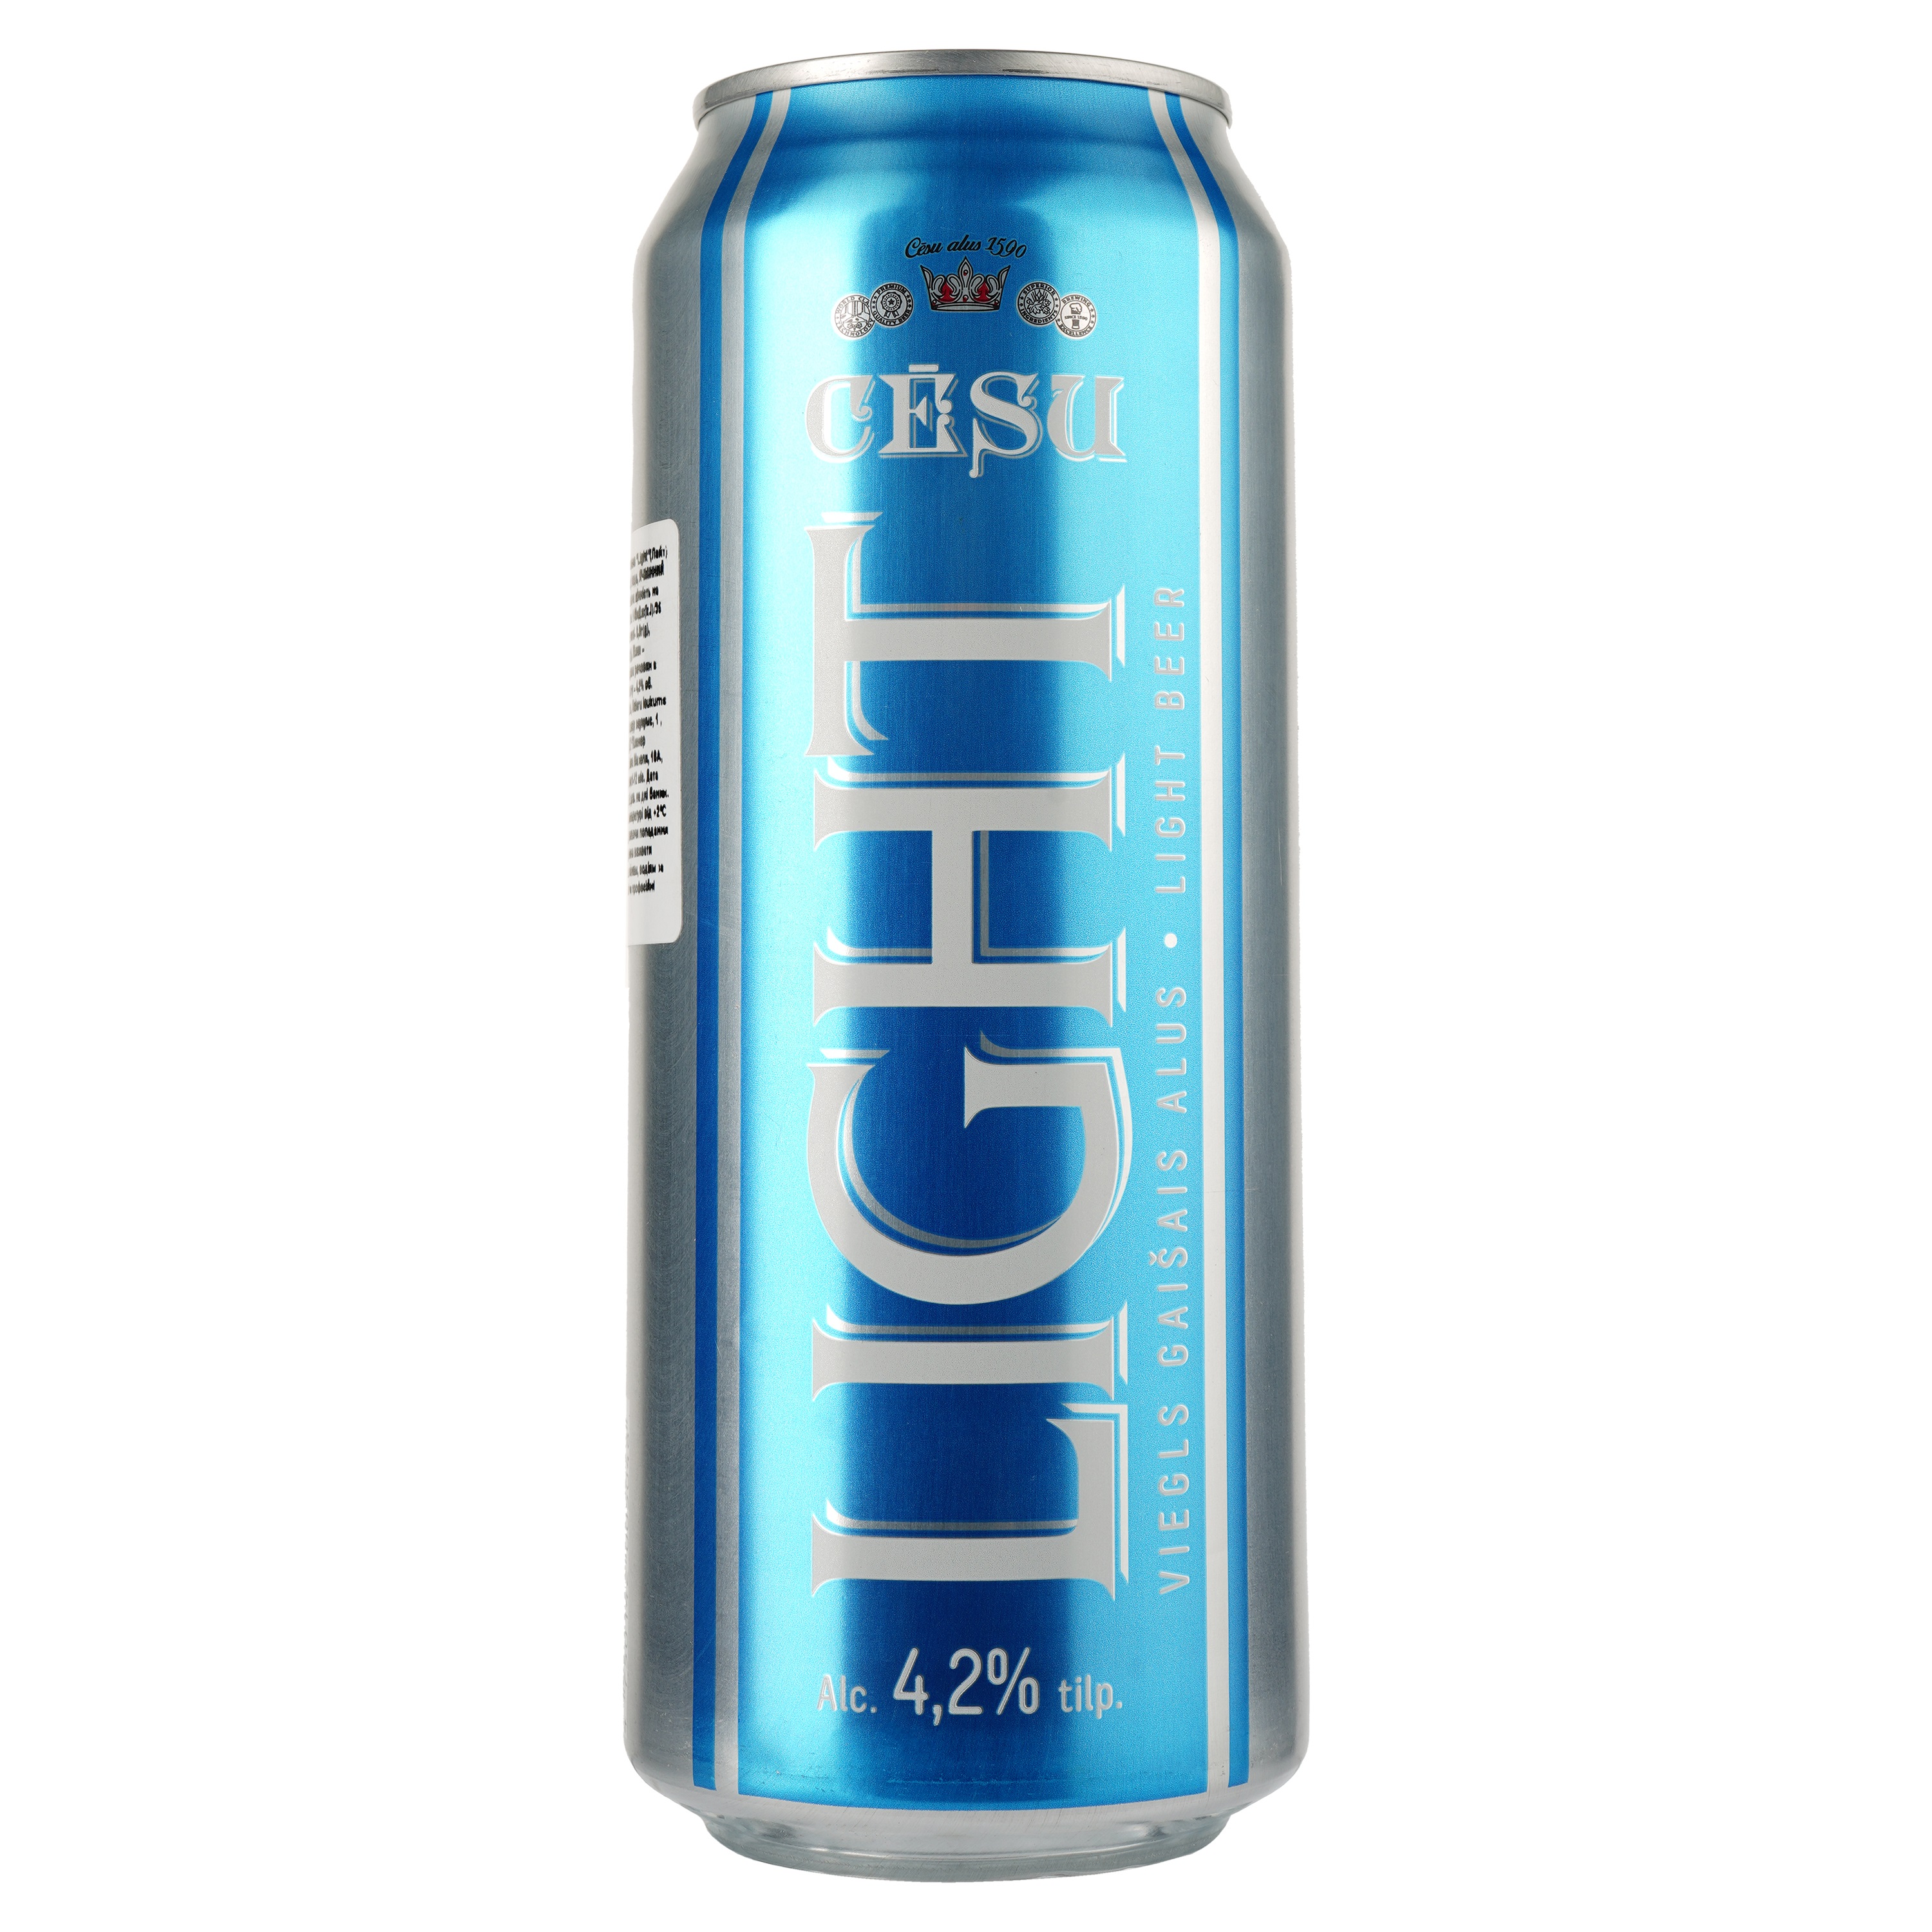 Пиво Cesu Light, светлое, фильтрованное, 4,2%, ж/б, 0,5 л - фото 1